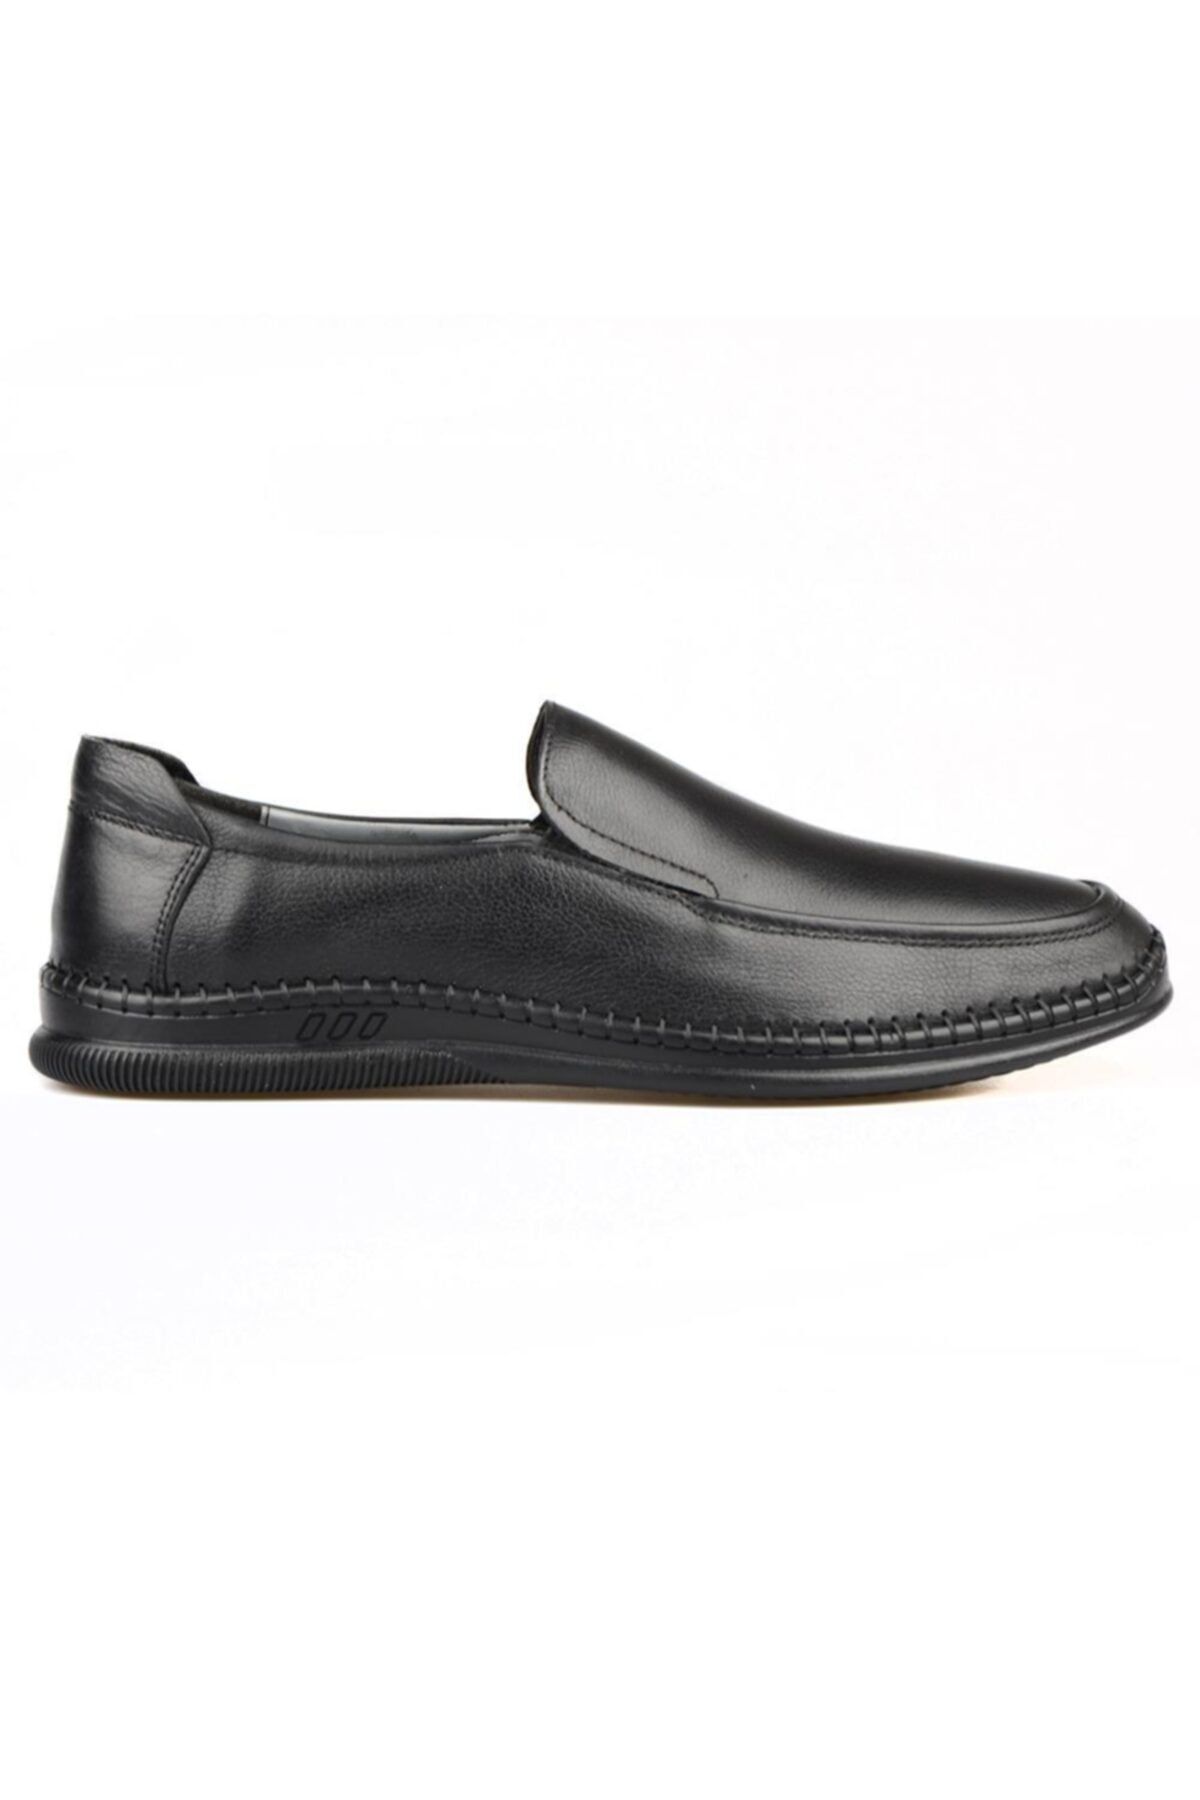 FootCourt Erkek Siyah Bağcıksız Günlük Ayakkabı Kaymaz Taban